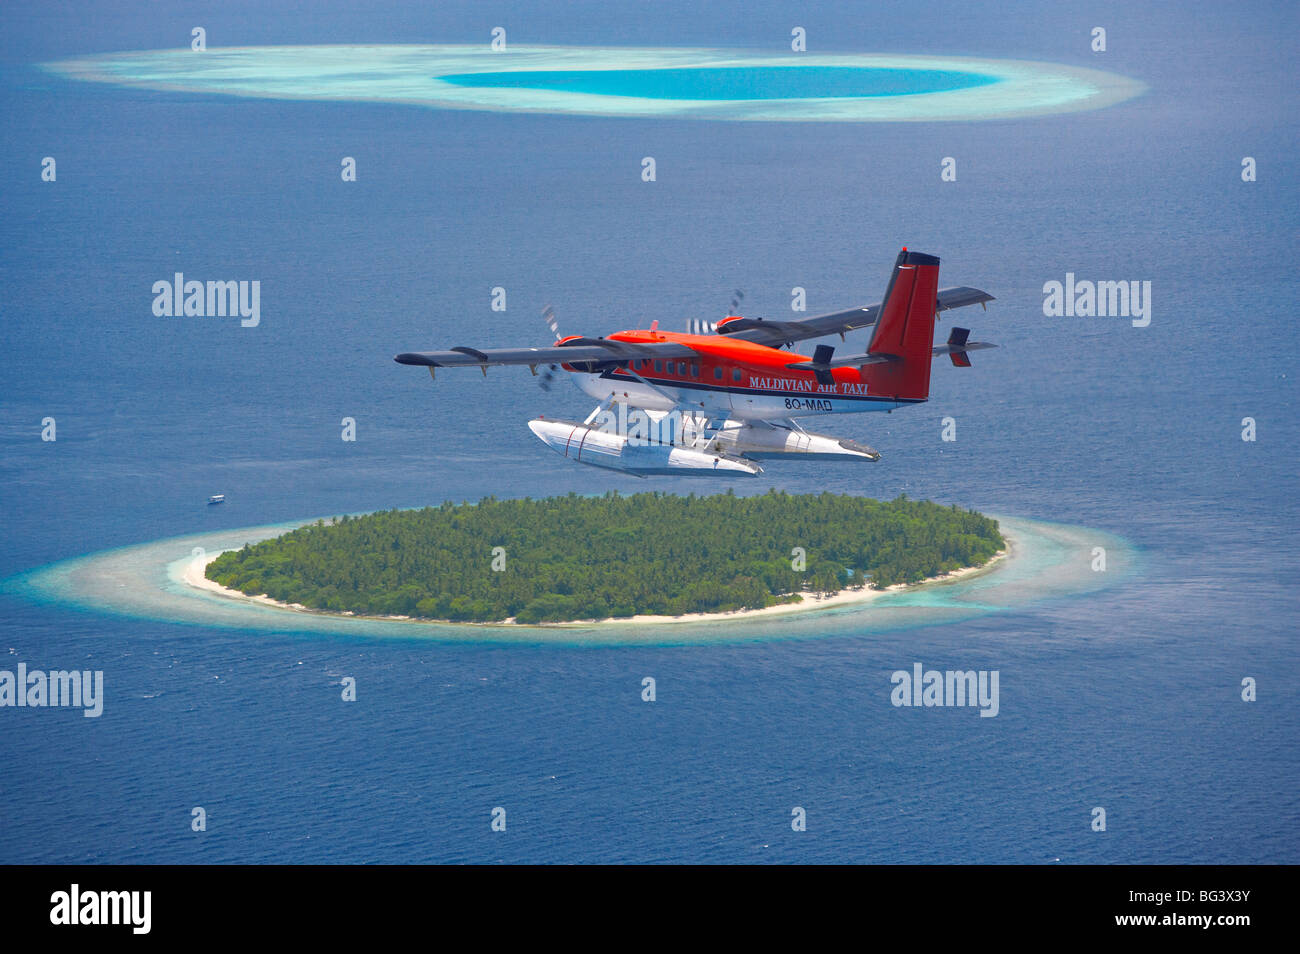 Maldivian Air Taxi fliegen über Insel, Malediven, Indischer Ozean, Asien Stockfoto